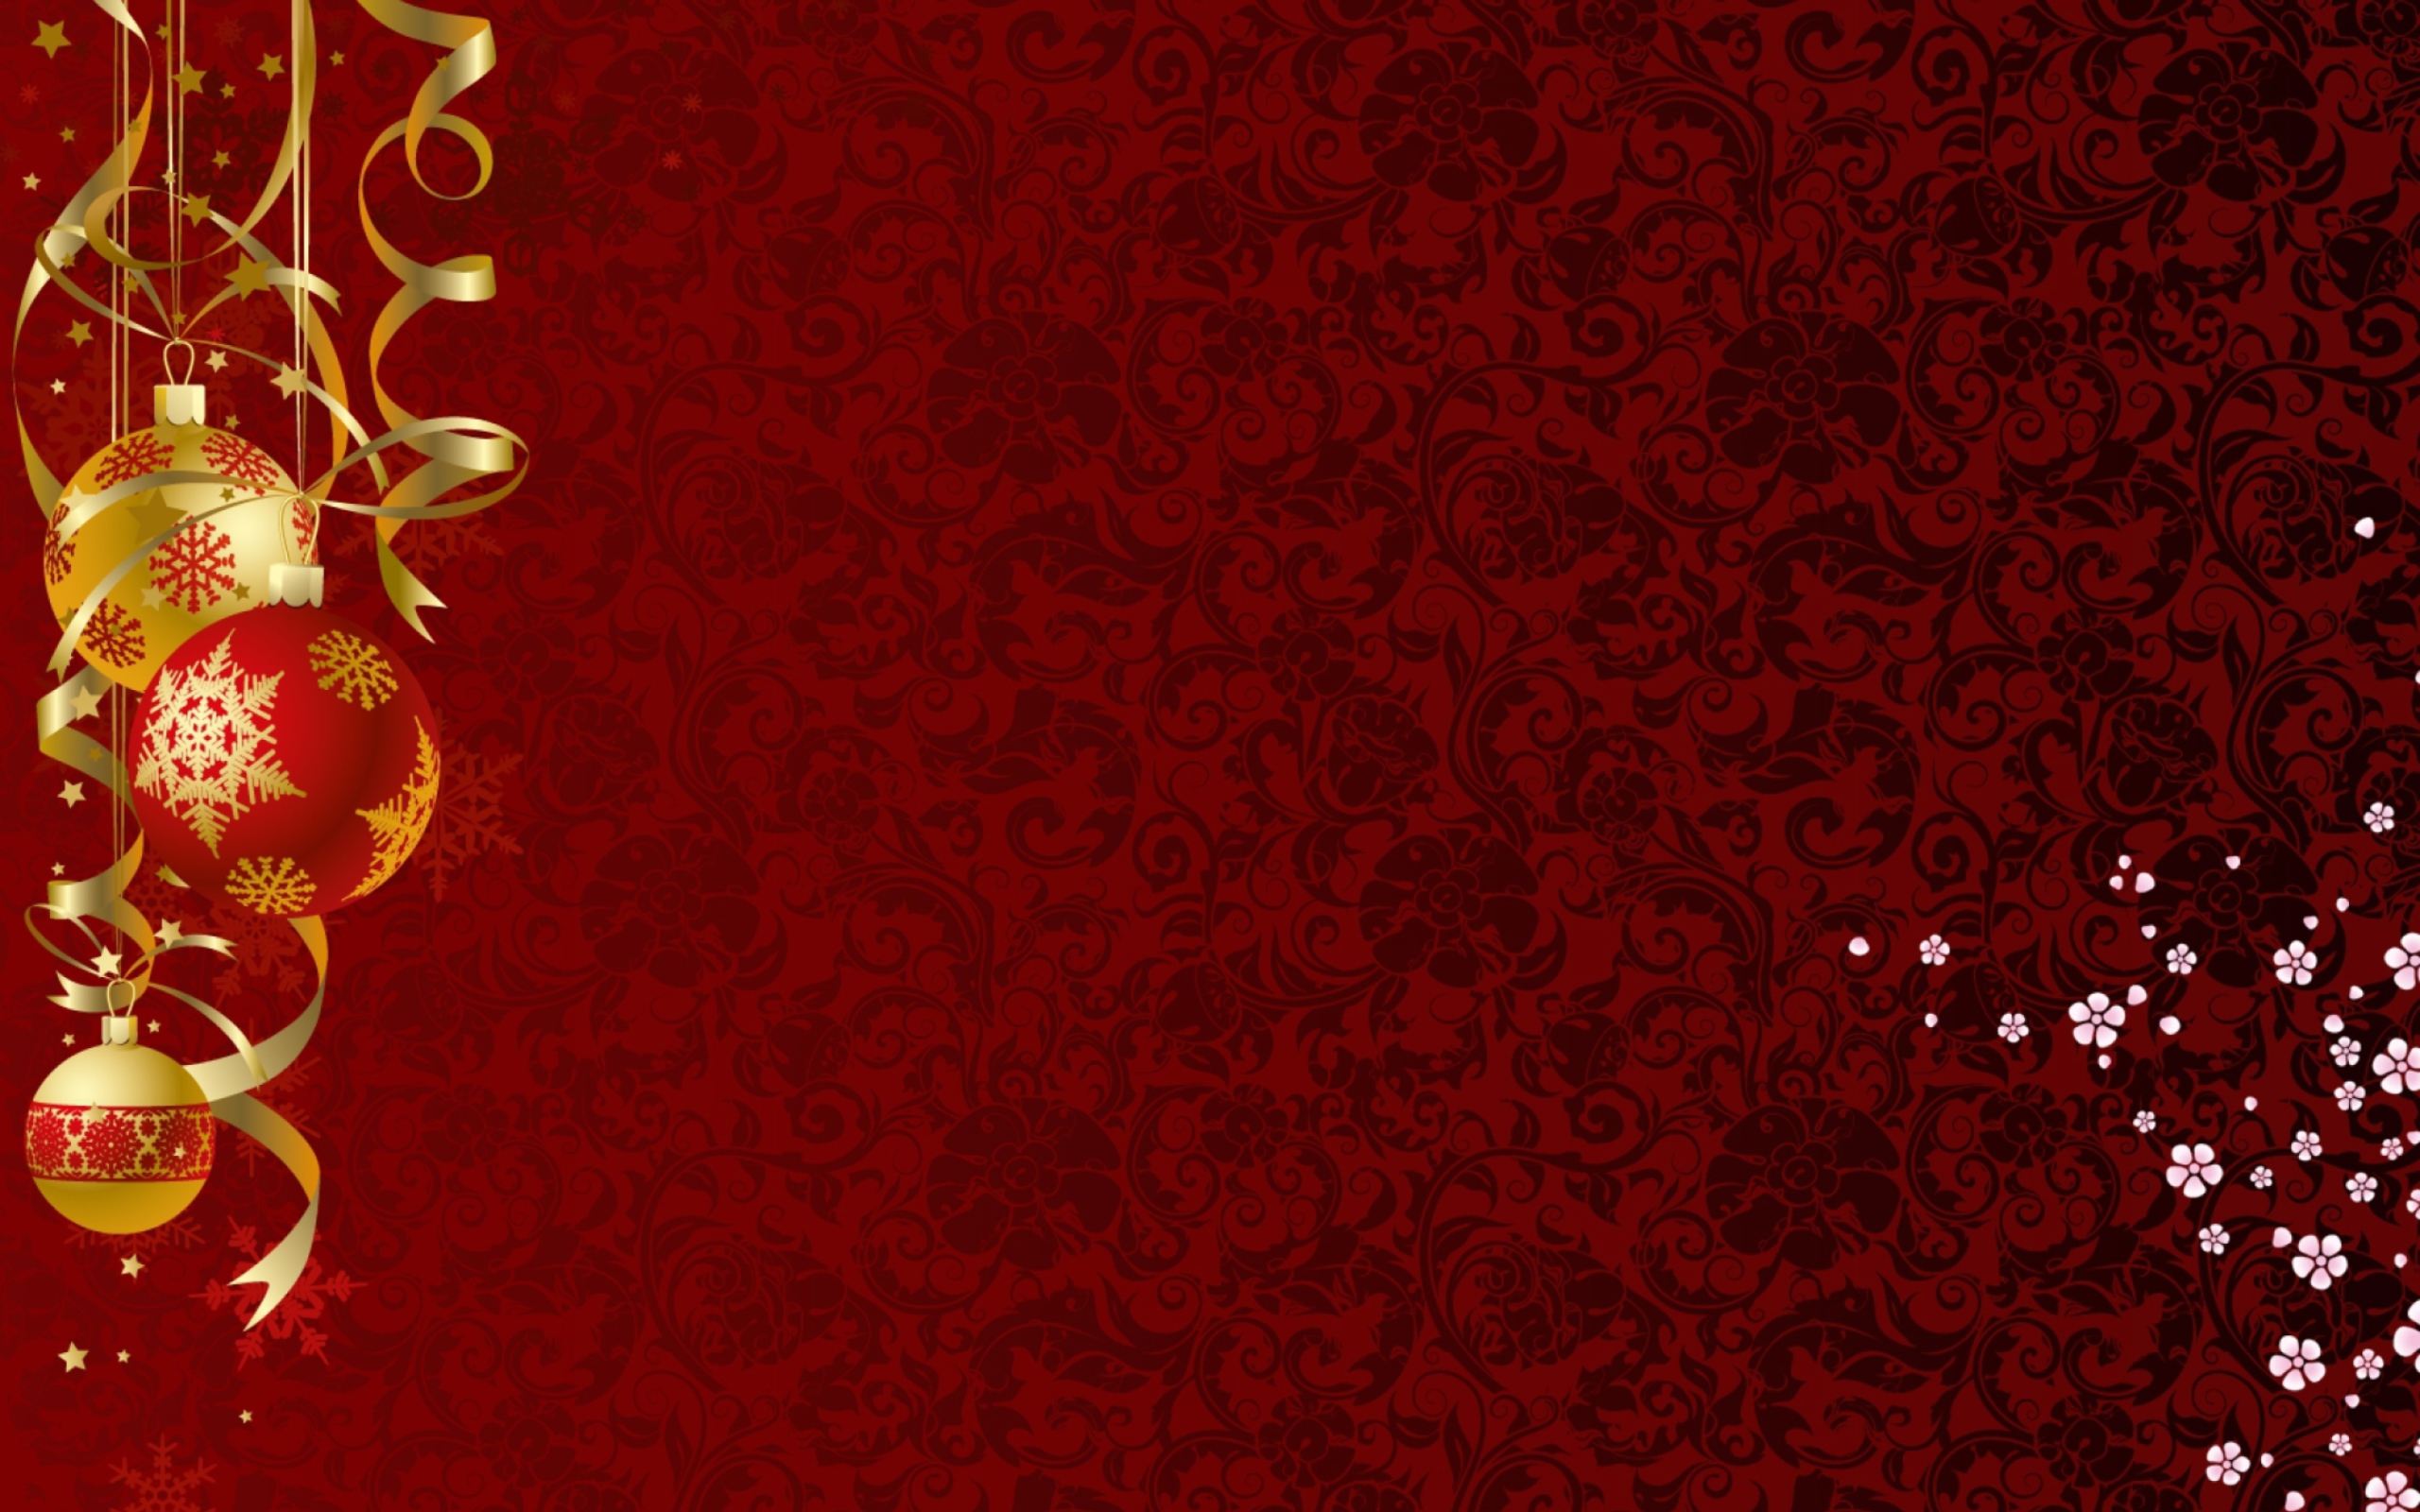 Red Xmas Ornaments wallpaper 2560x1600